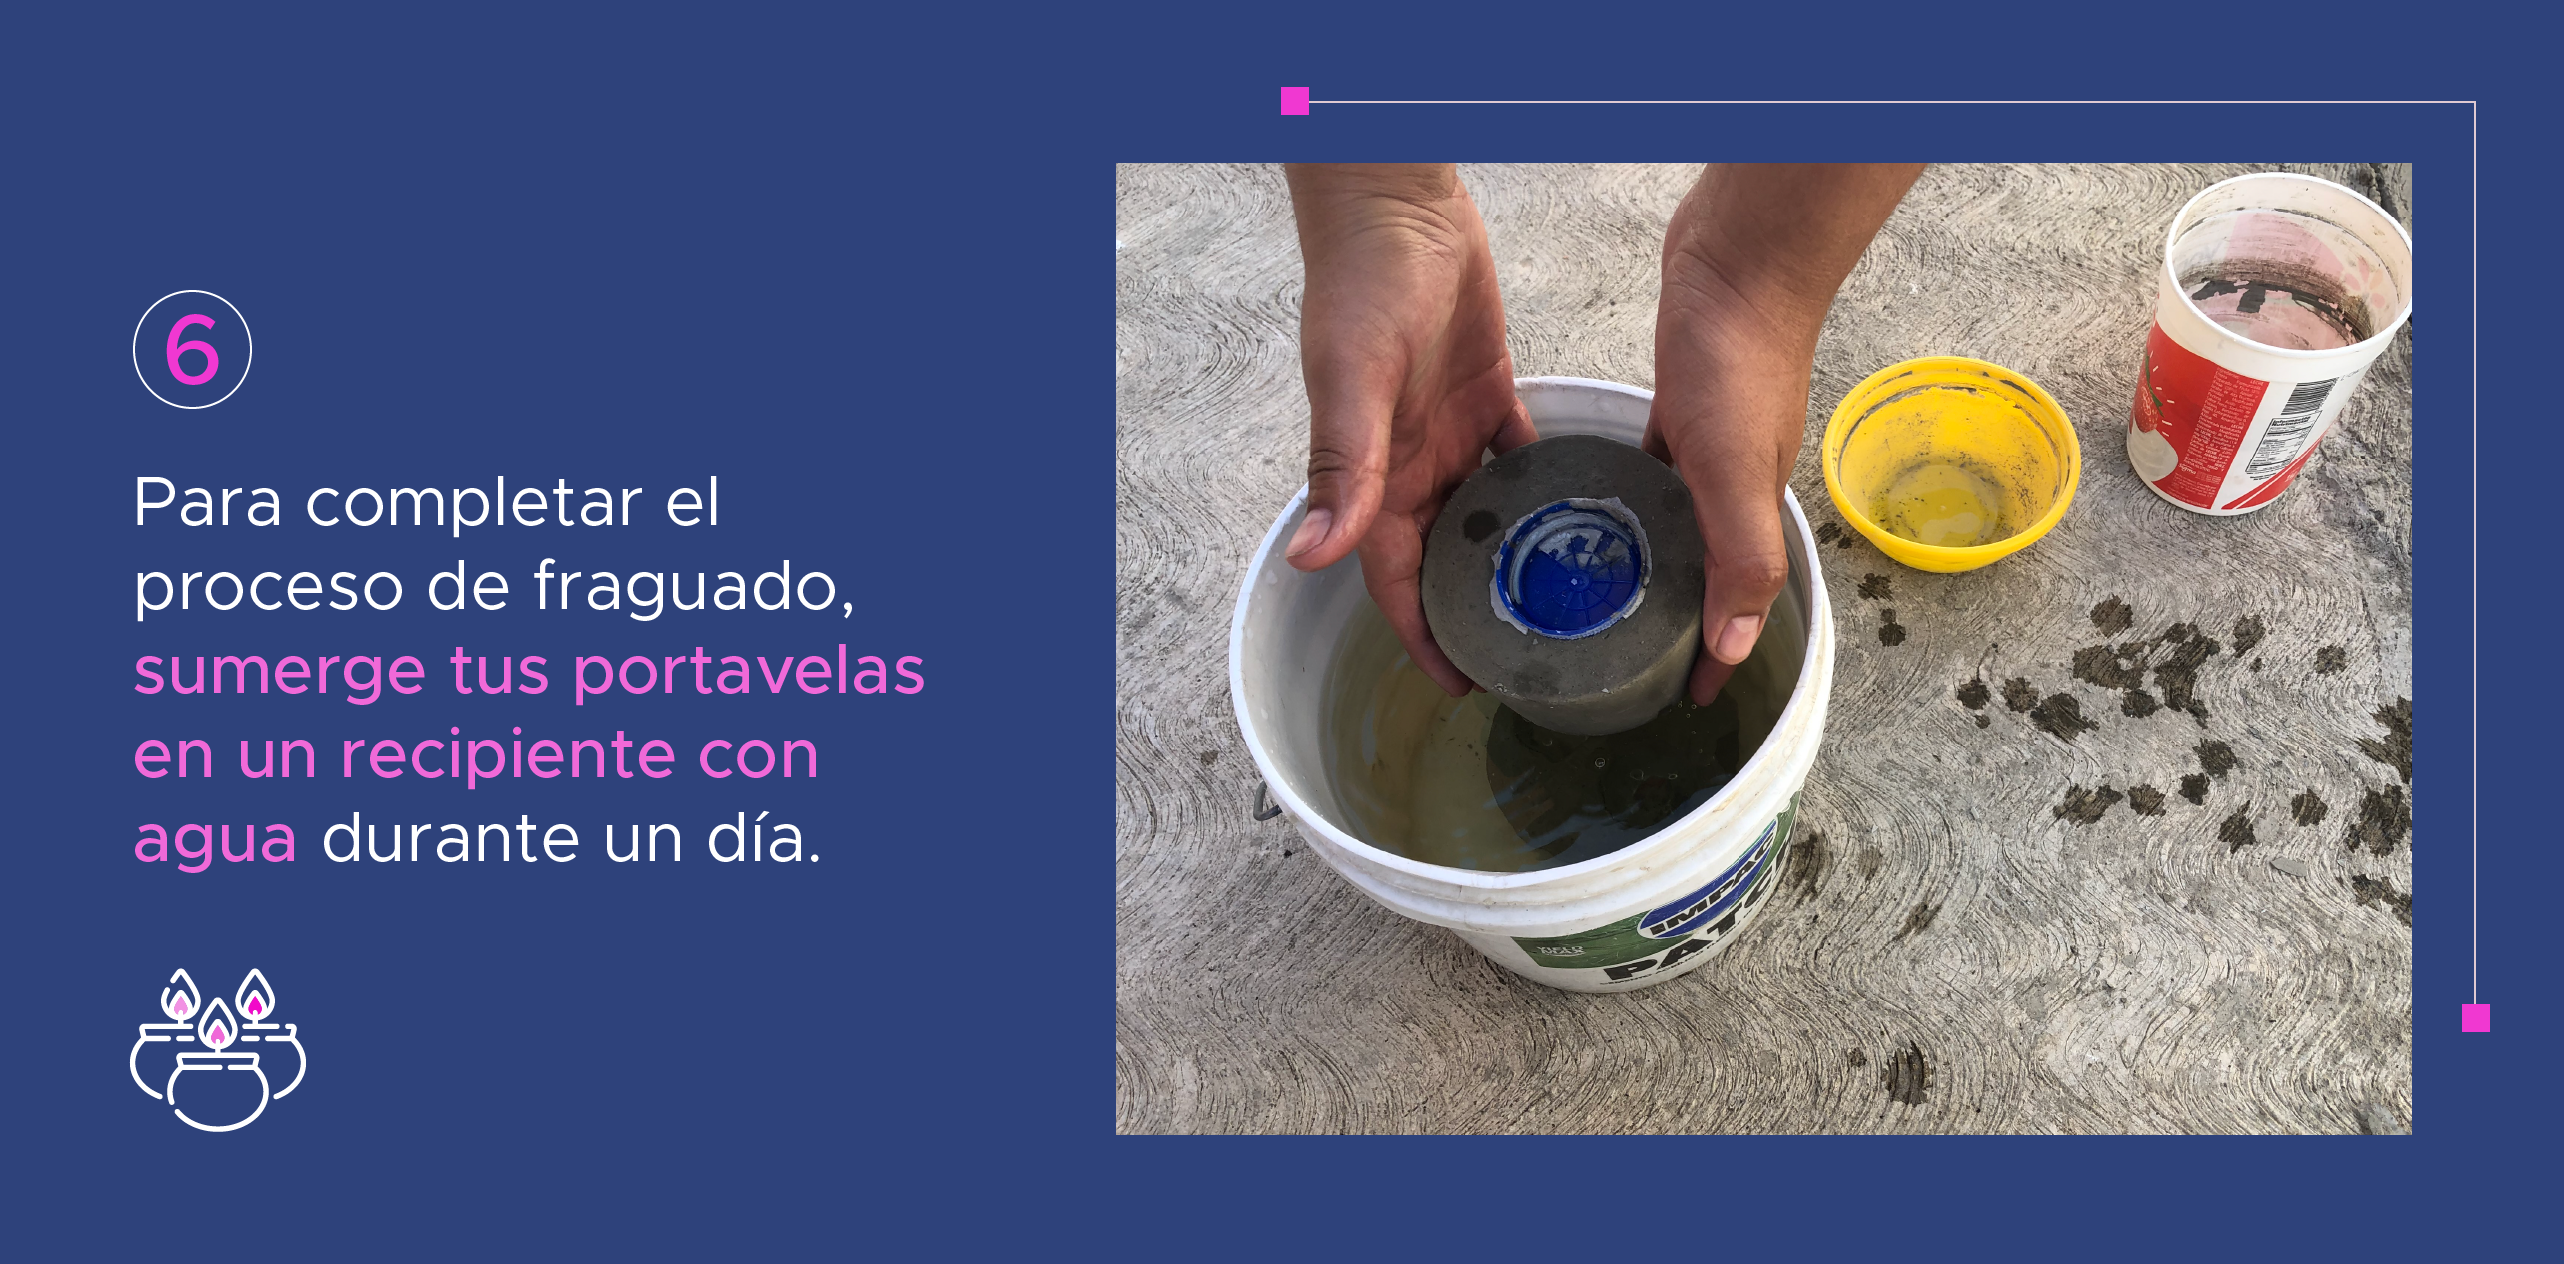  6. Para completar el proceso de fraguado, sumerge tus portavelas en un recipiente con agua durante un día